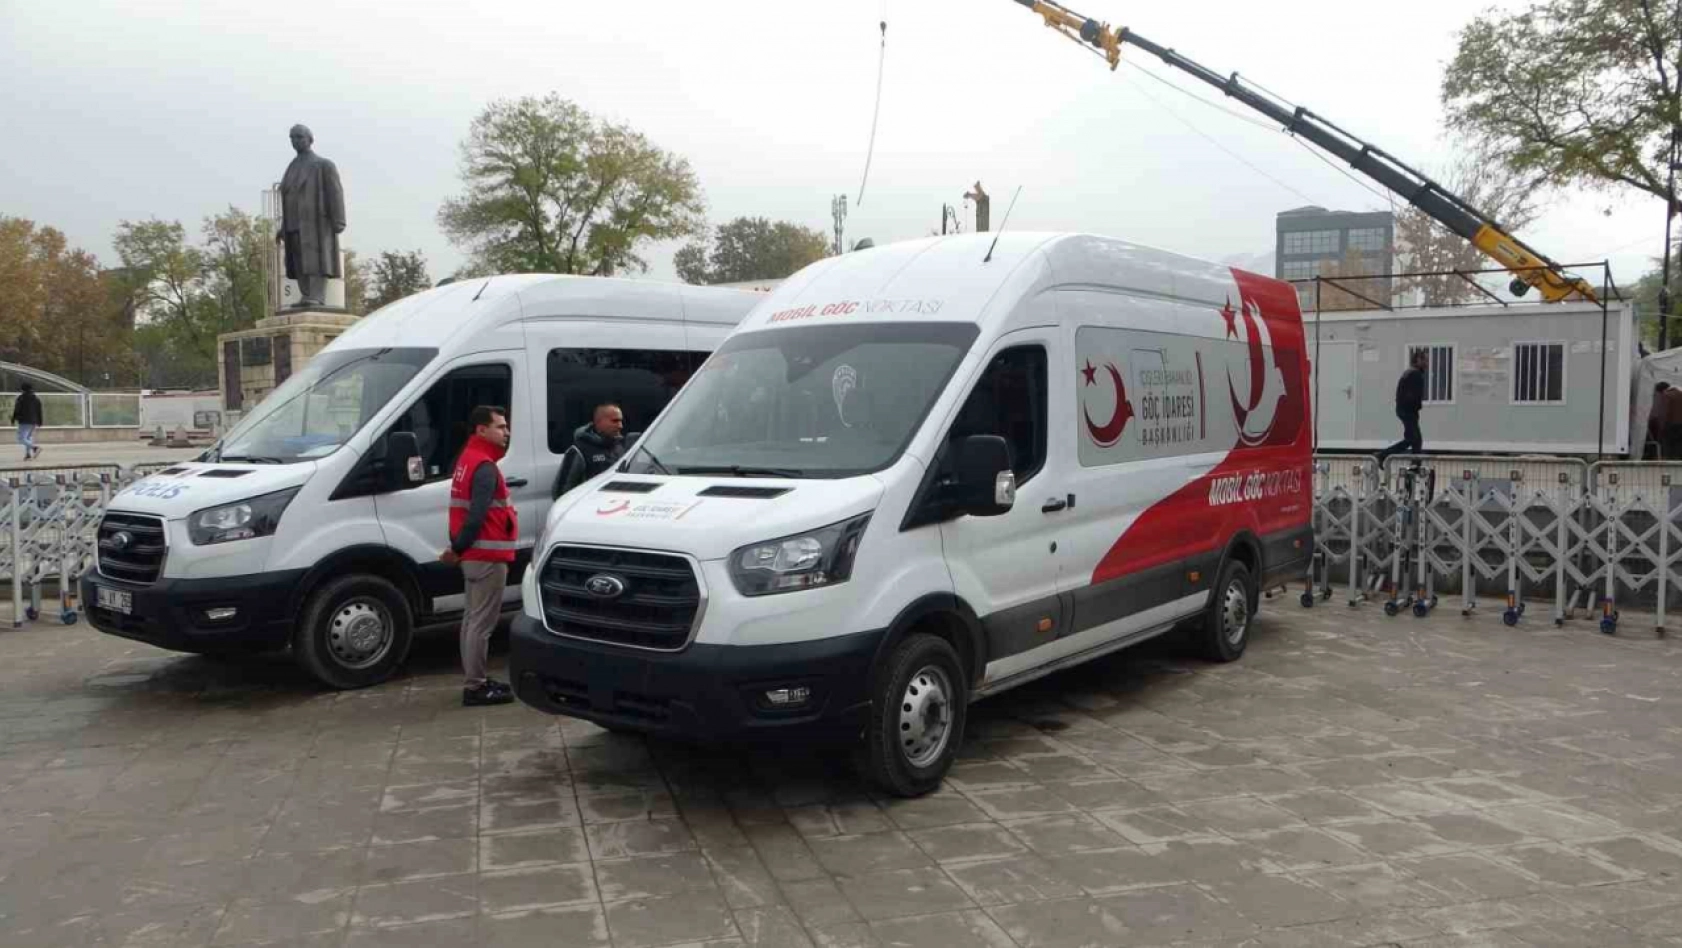 Malatya'da 'Mobil Göç Noktası' aracı hizmete girdi